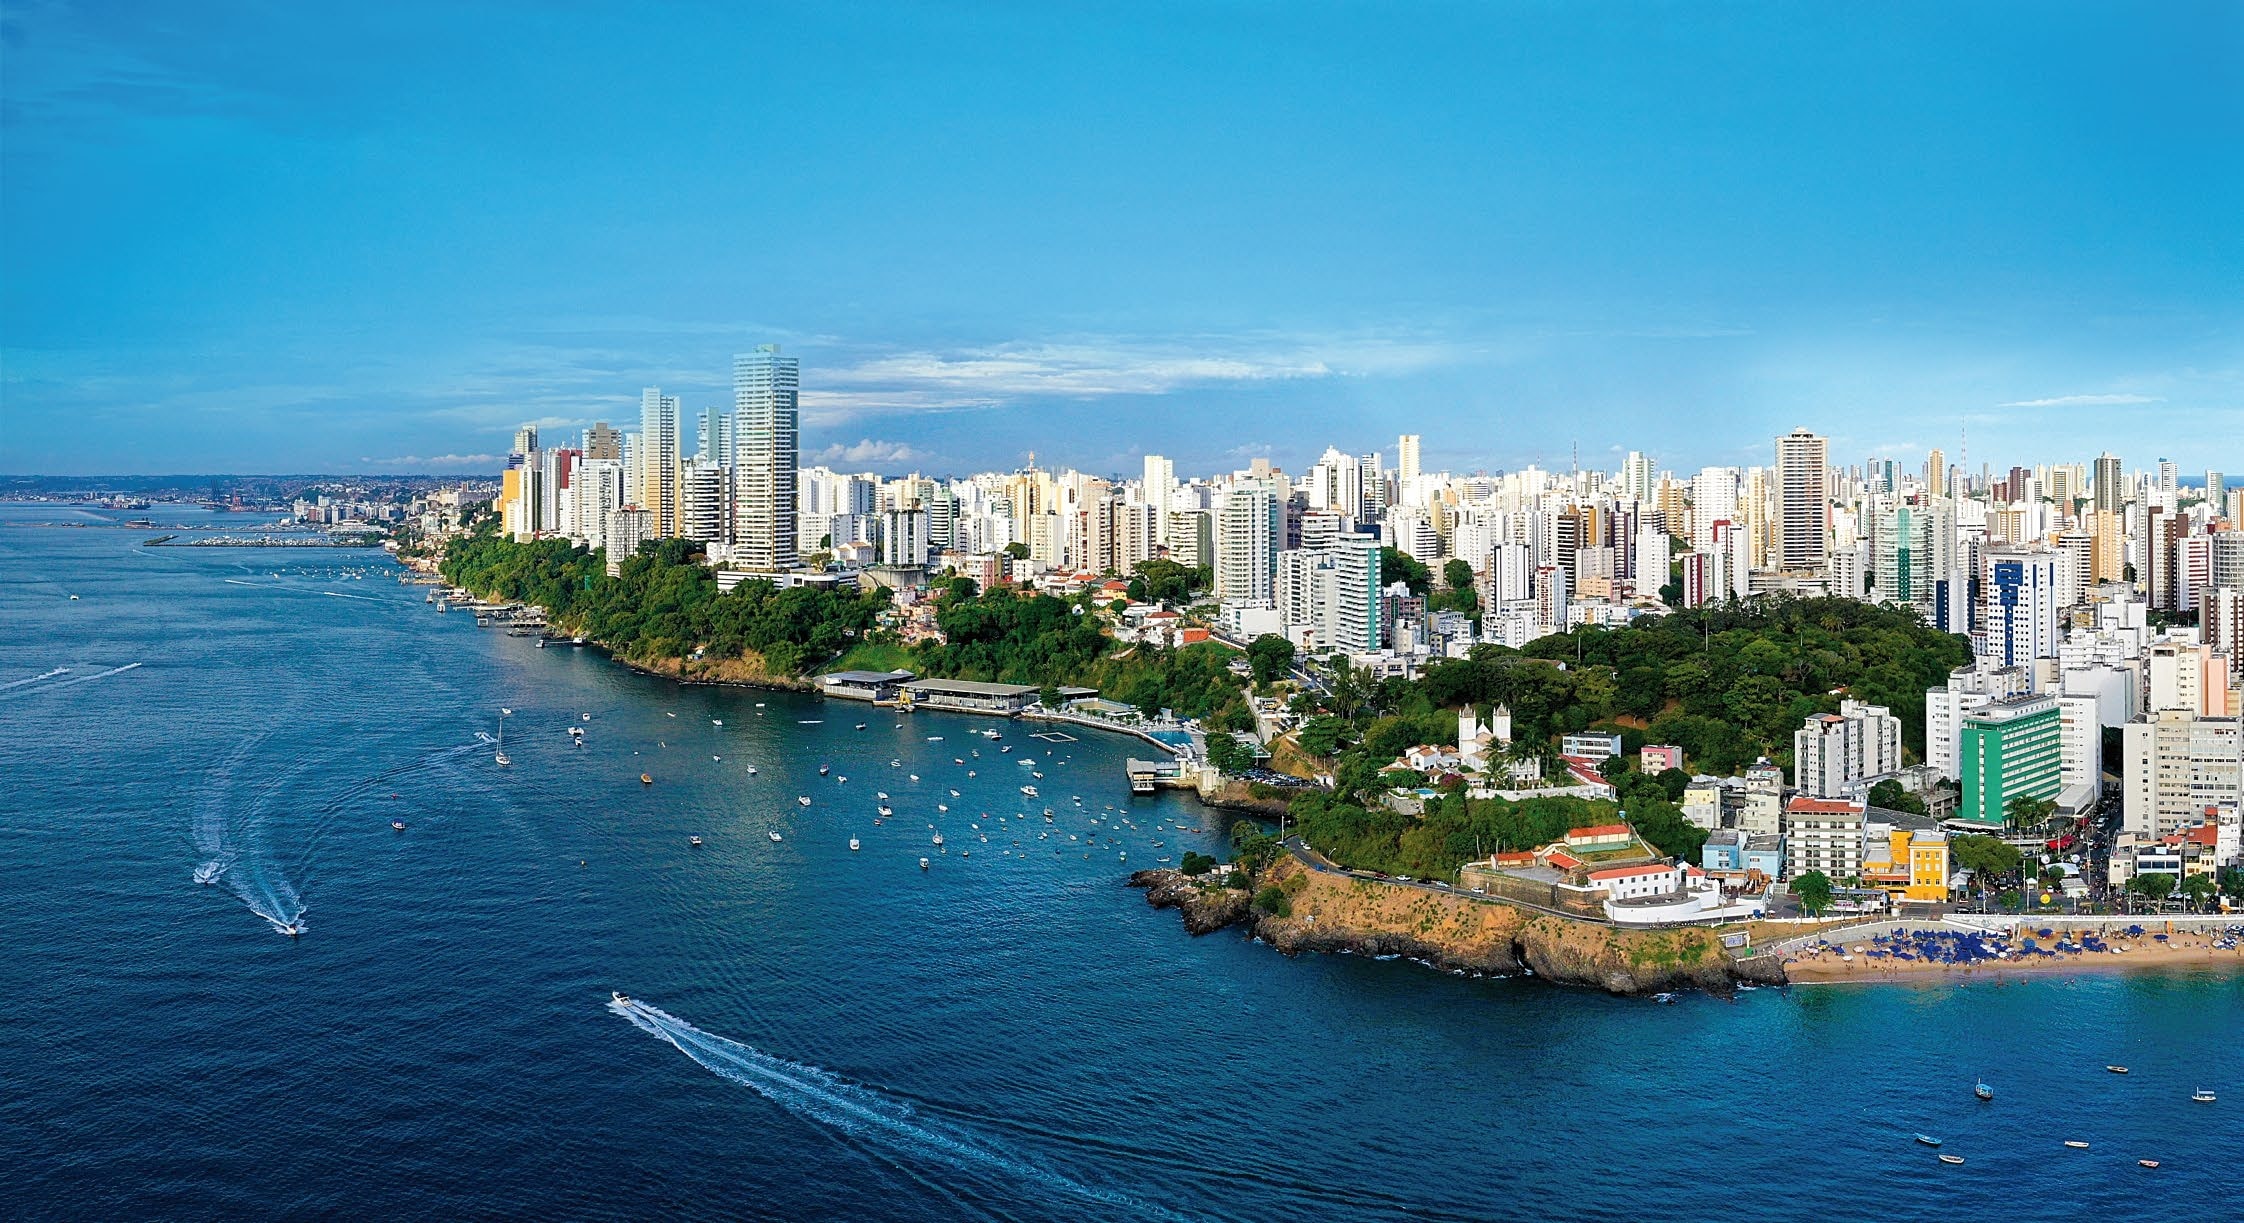 Vista aérea da Ladeira da Barra em Salvador, mostrando o Yacht Clube da Bahia, o litoral e a paisagem urbana.